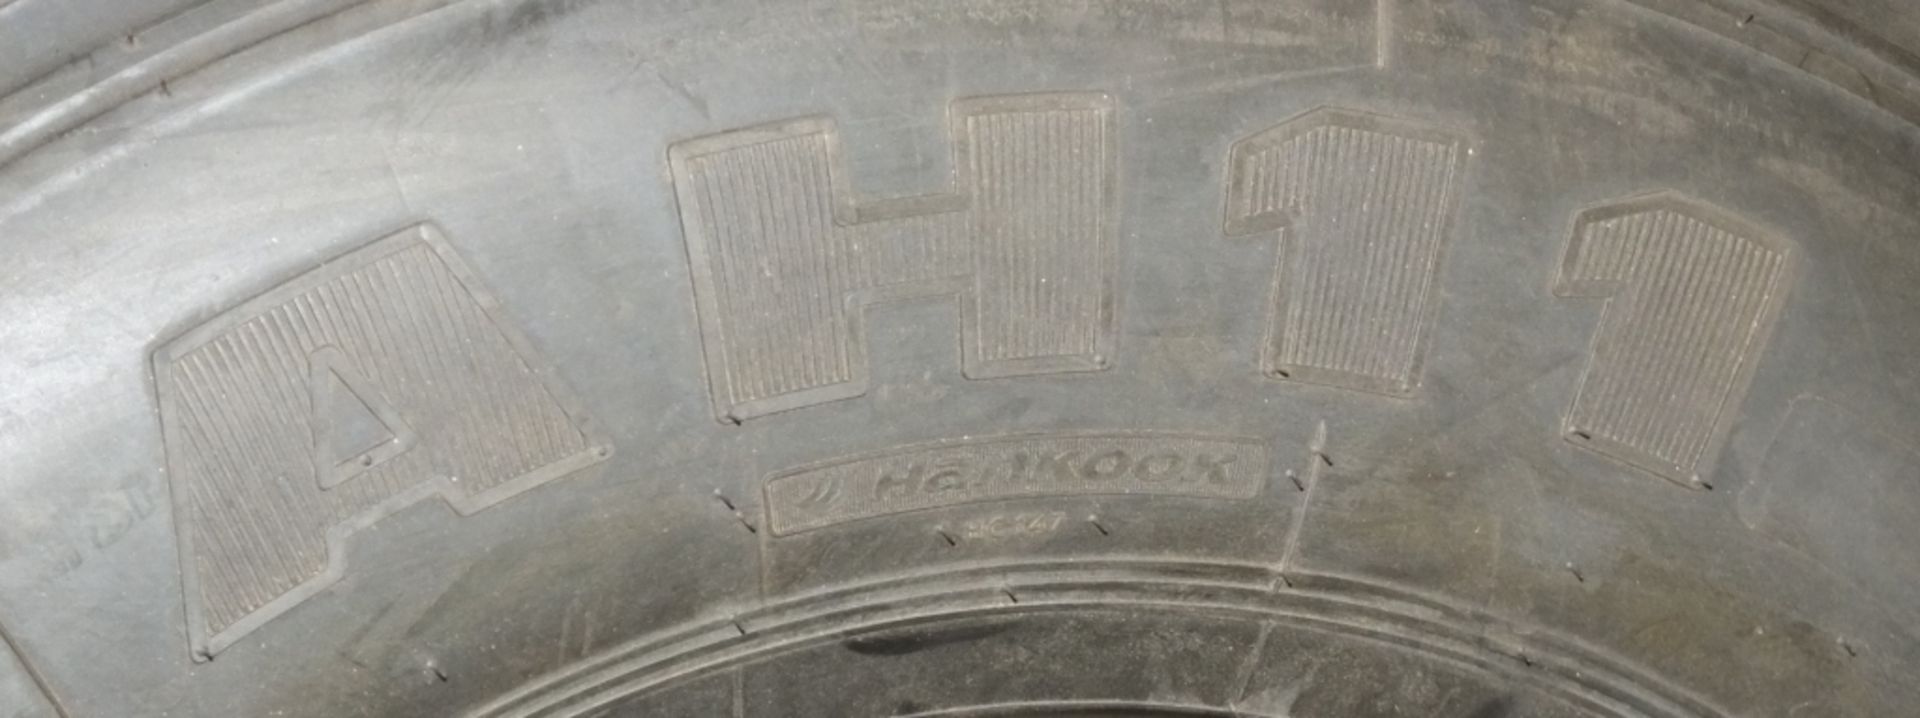 Hankook AH11 305/70R19.5 tyre (new & unused) - Bild 4 aus 5